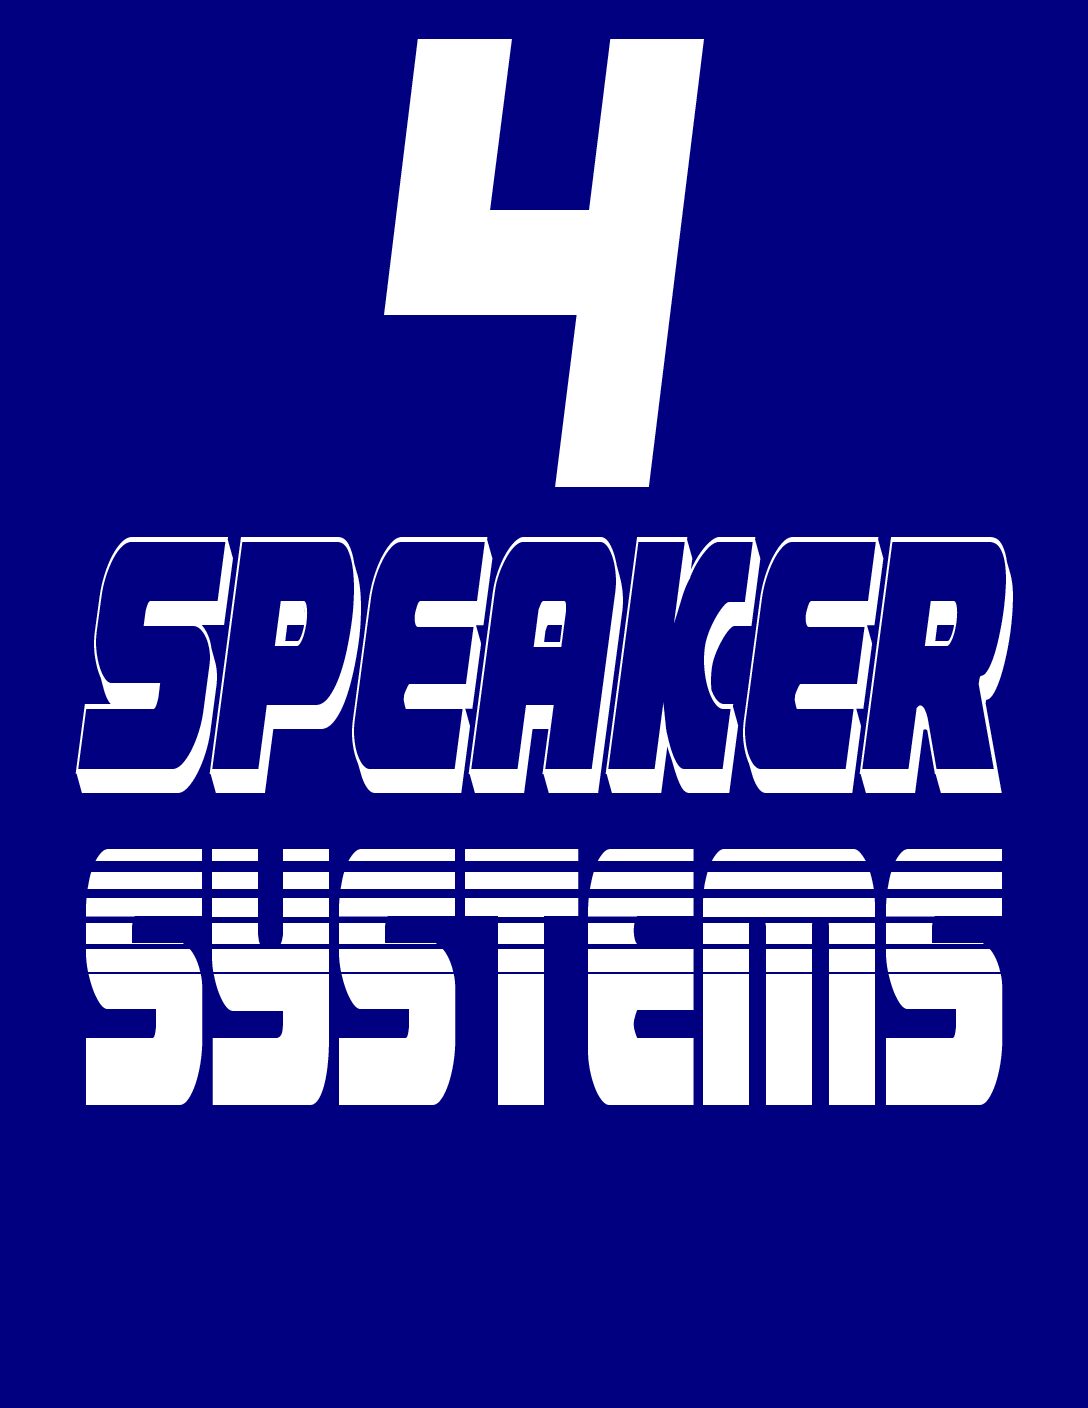 4 SPEAKER SYSTEM